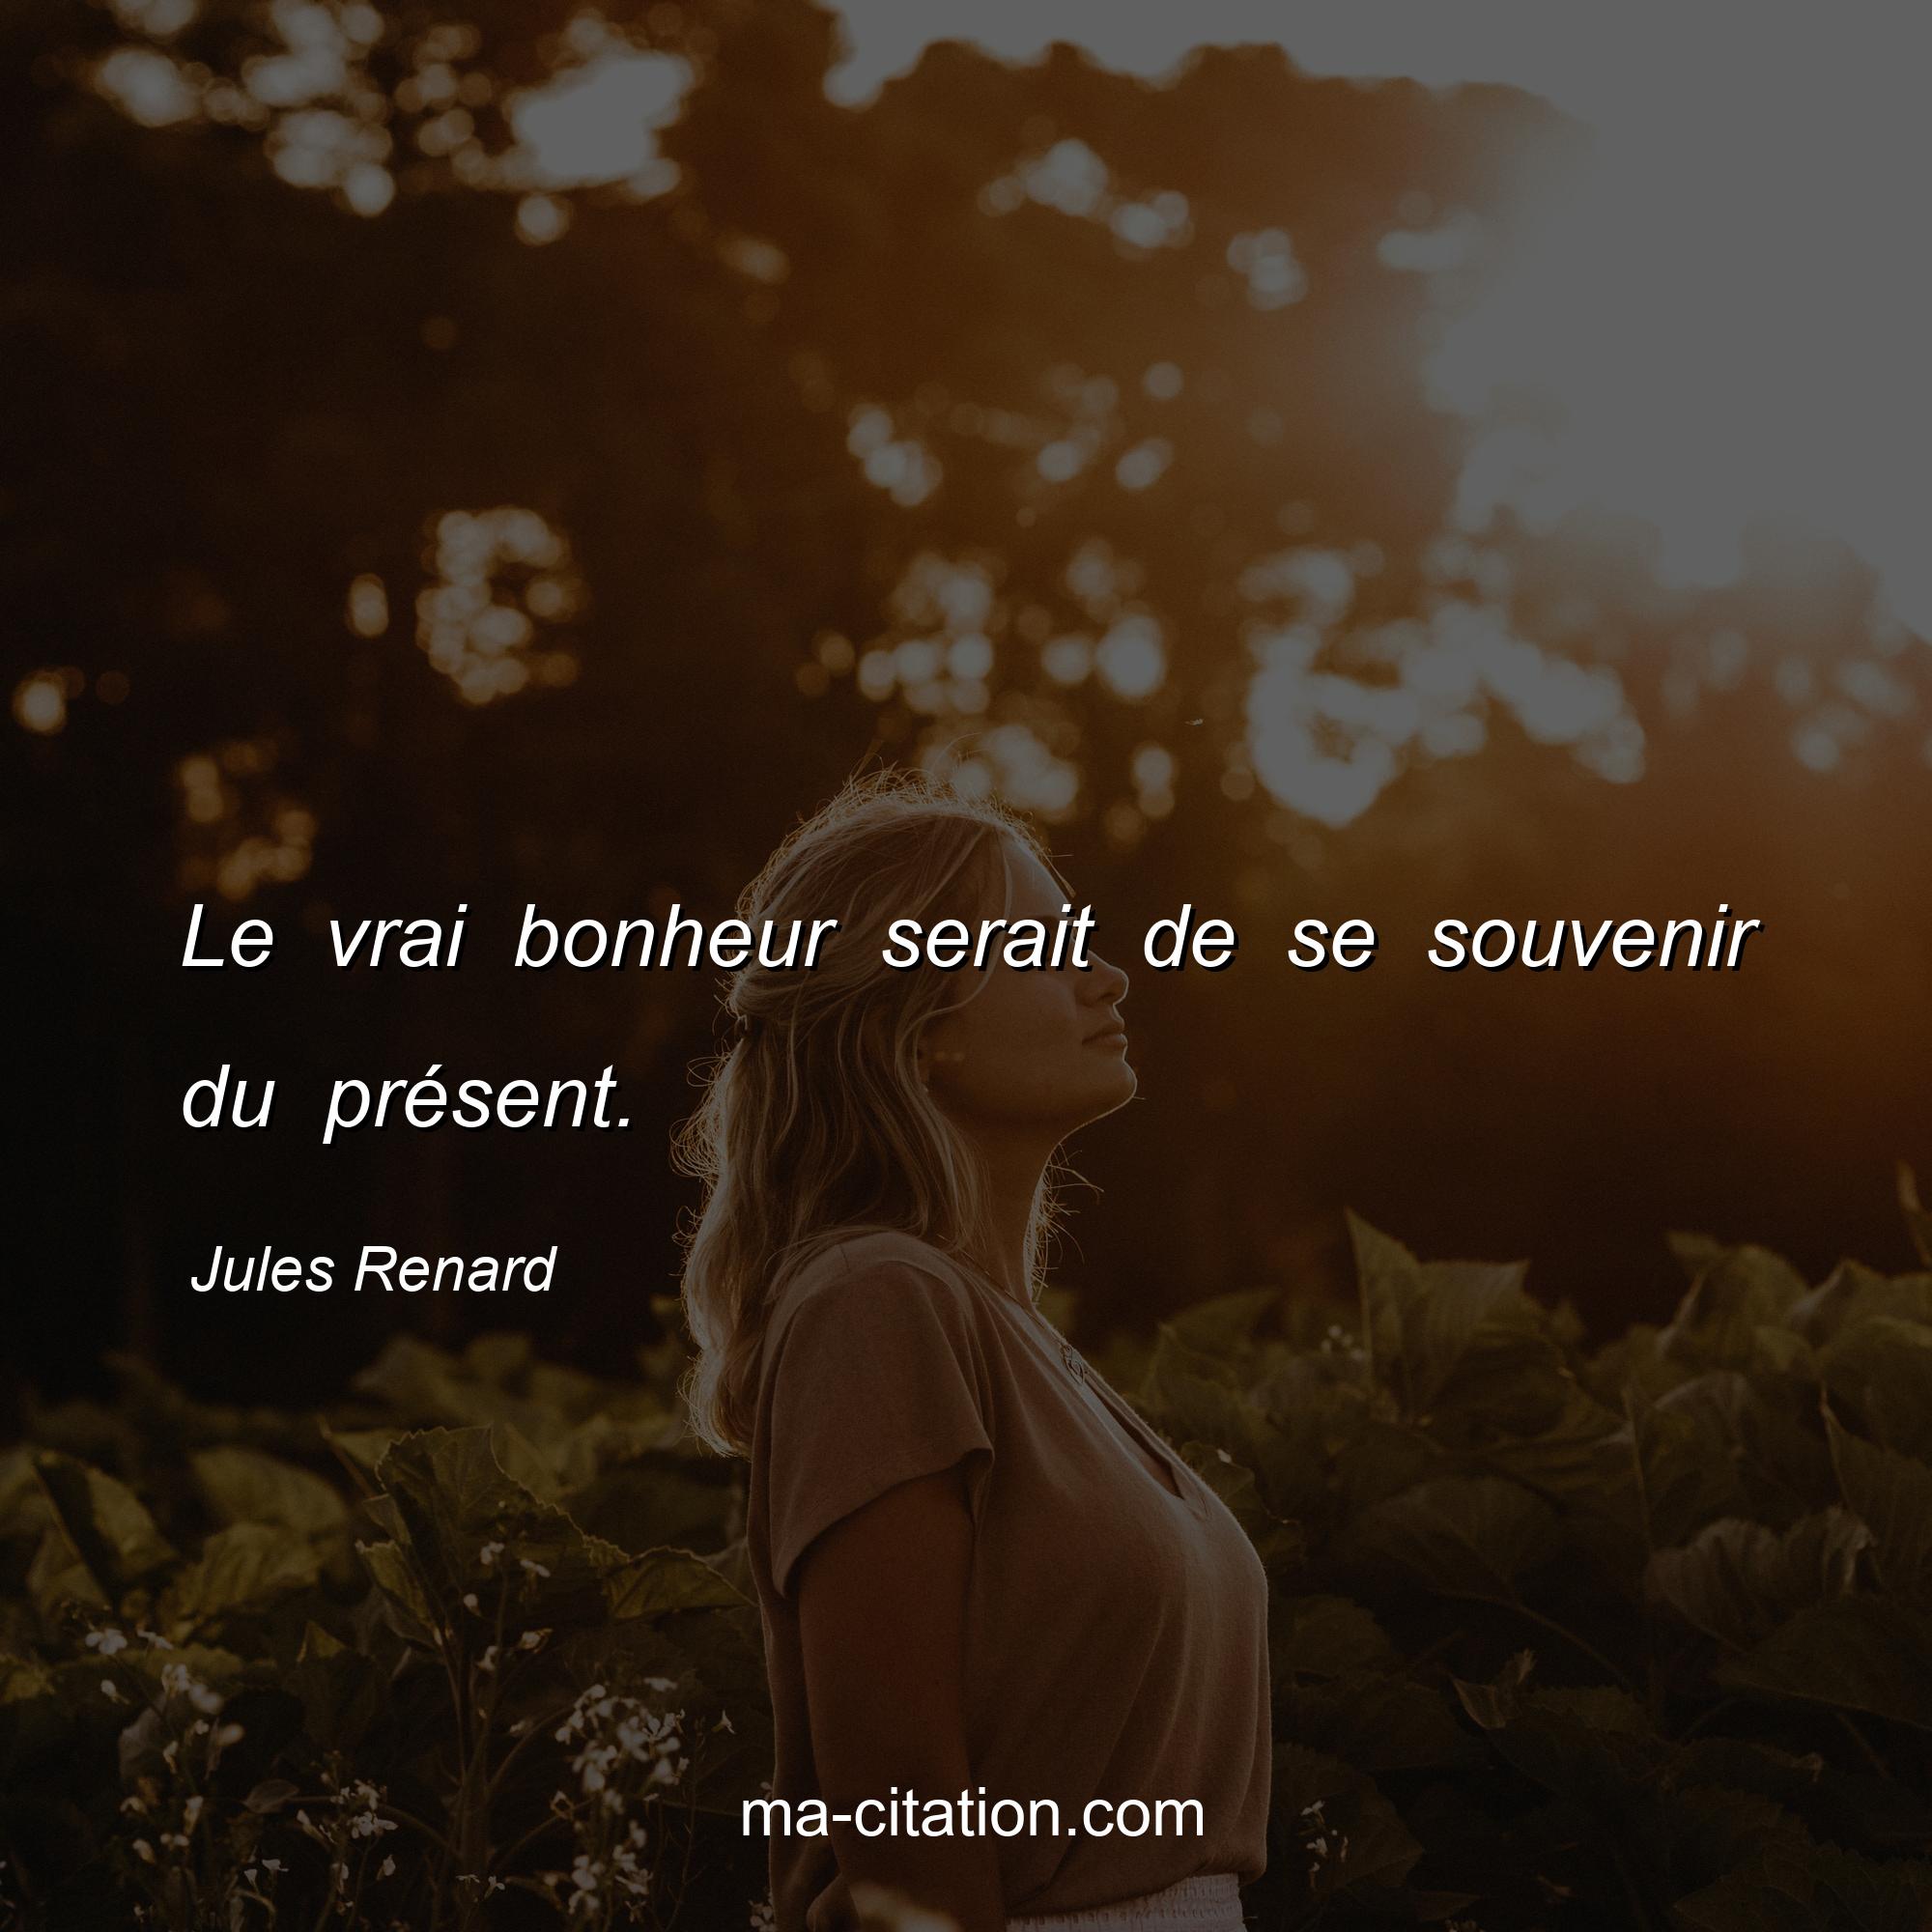 Jules Renard : Le vrai bonheur serait de se souvenir du présent.